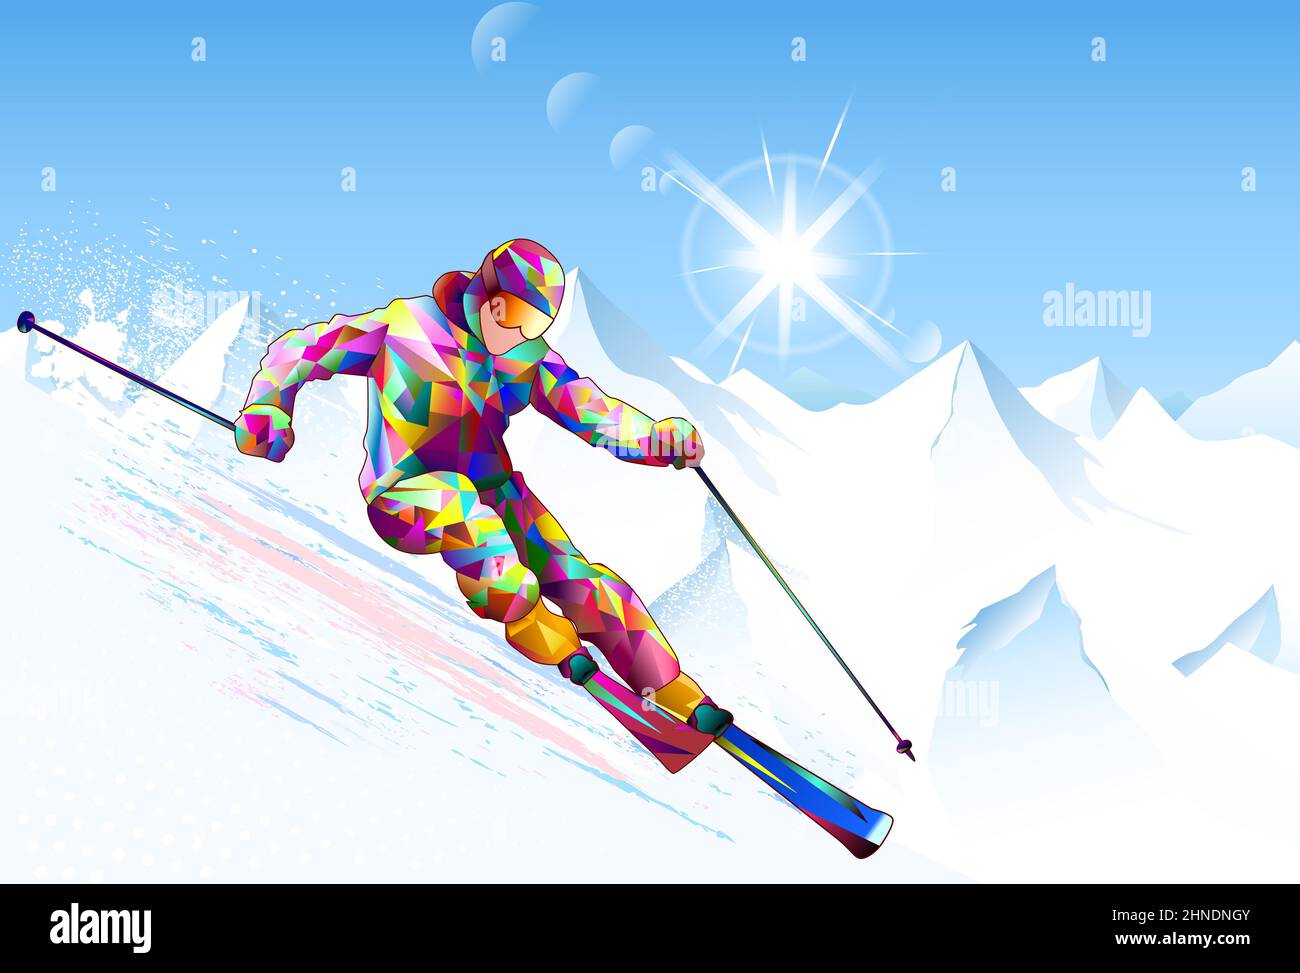 Un skieur descend sur des skis sur fond de ciel, de sommets enneigés et de soleil. Skieur sur une pente enneigée. Illustration de Vecteur